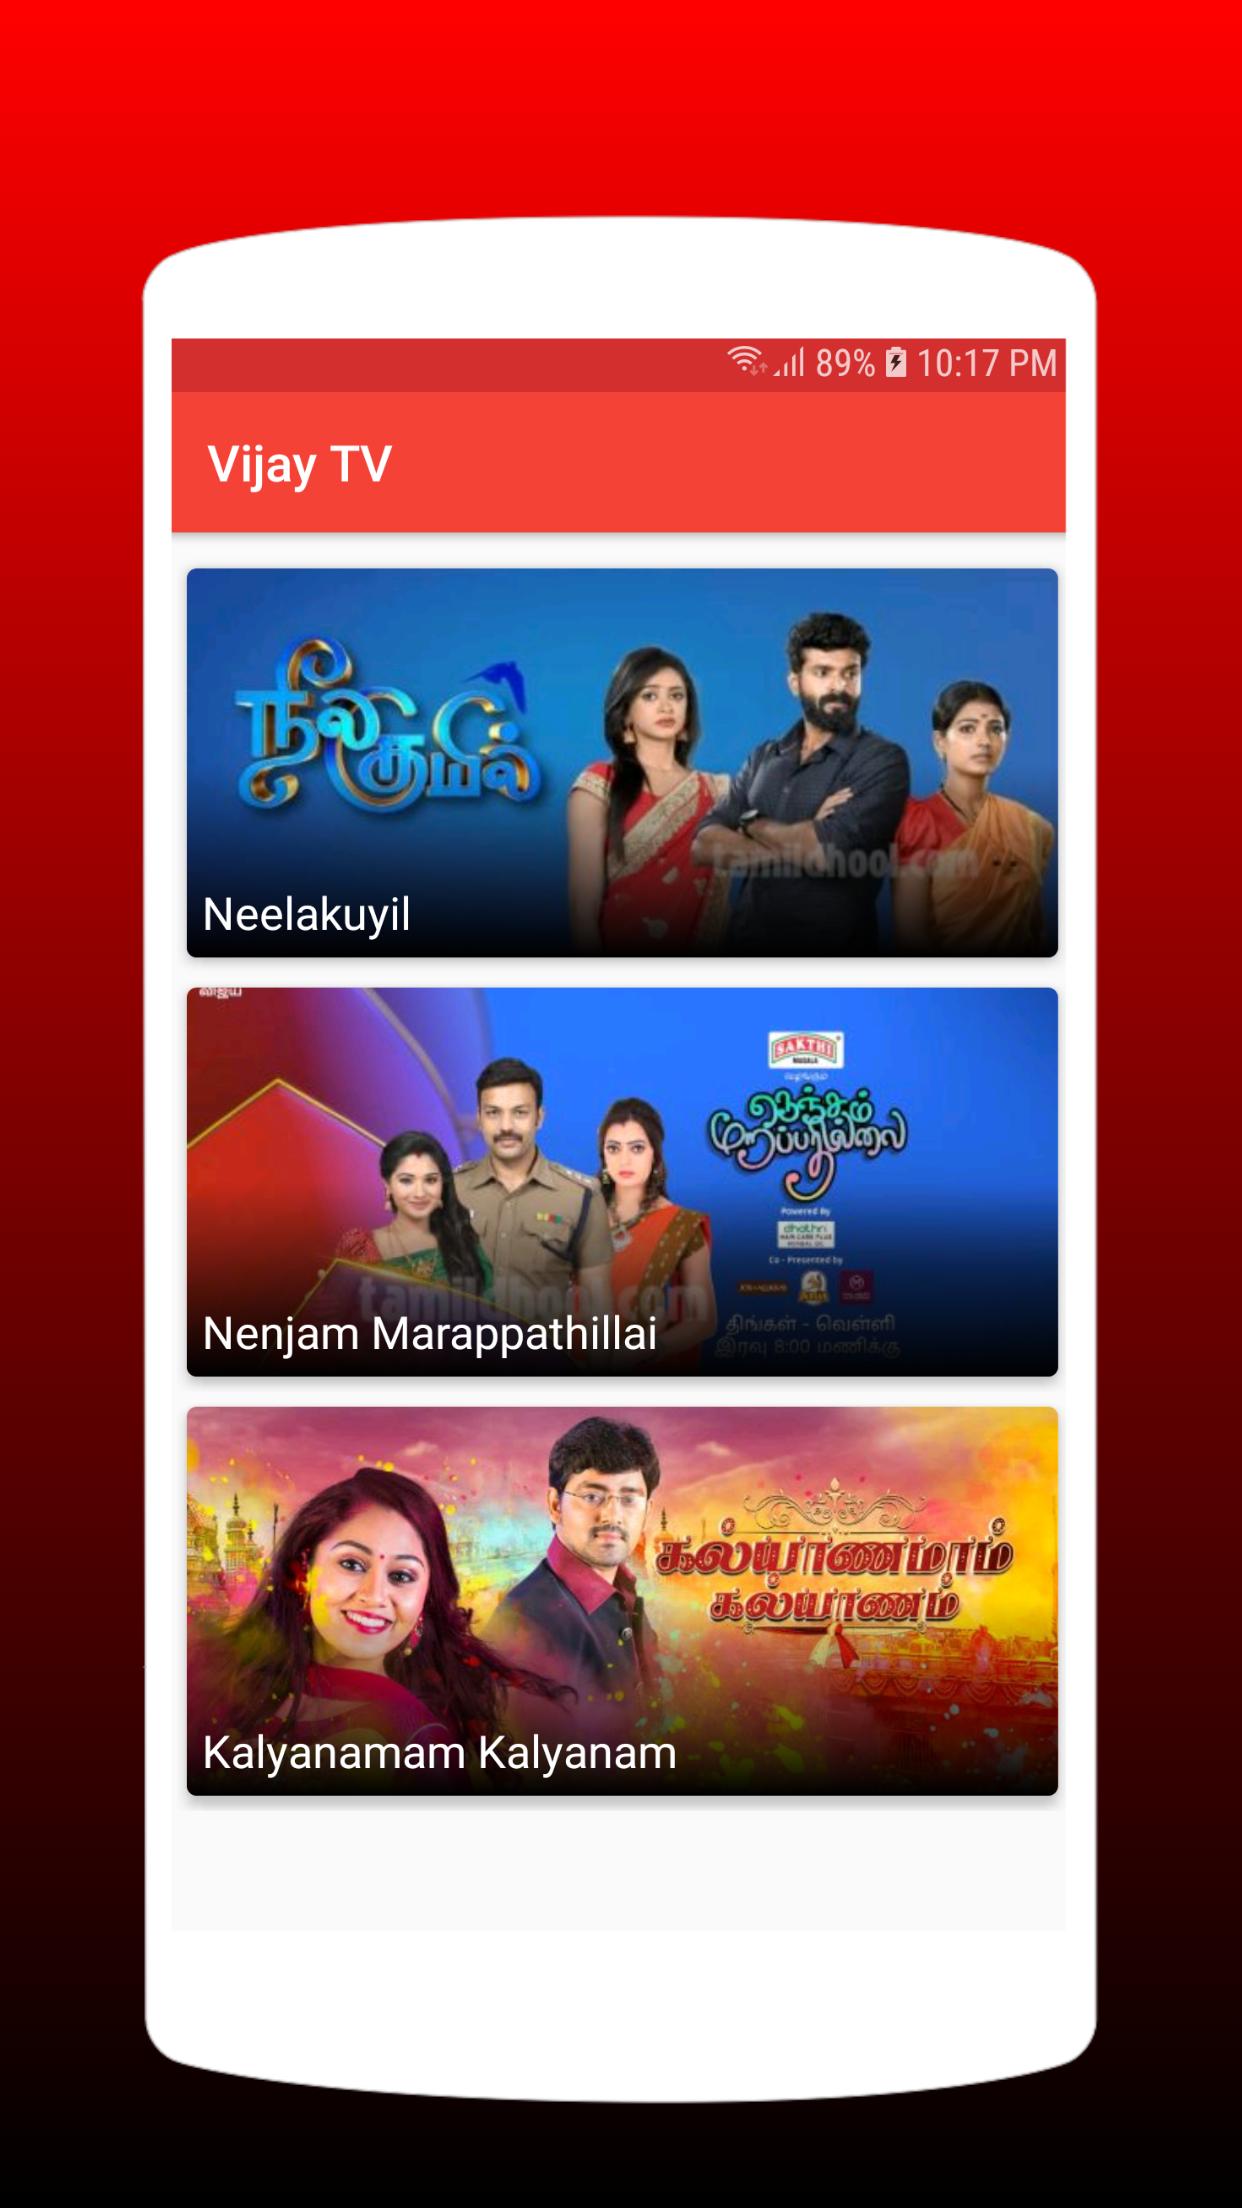 Vijay tv program